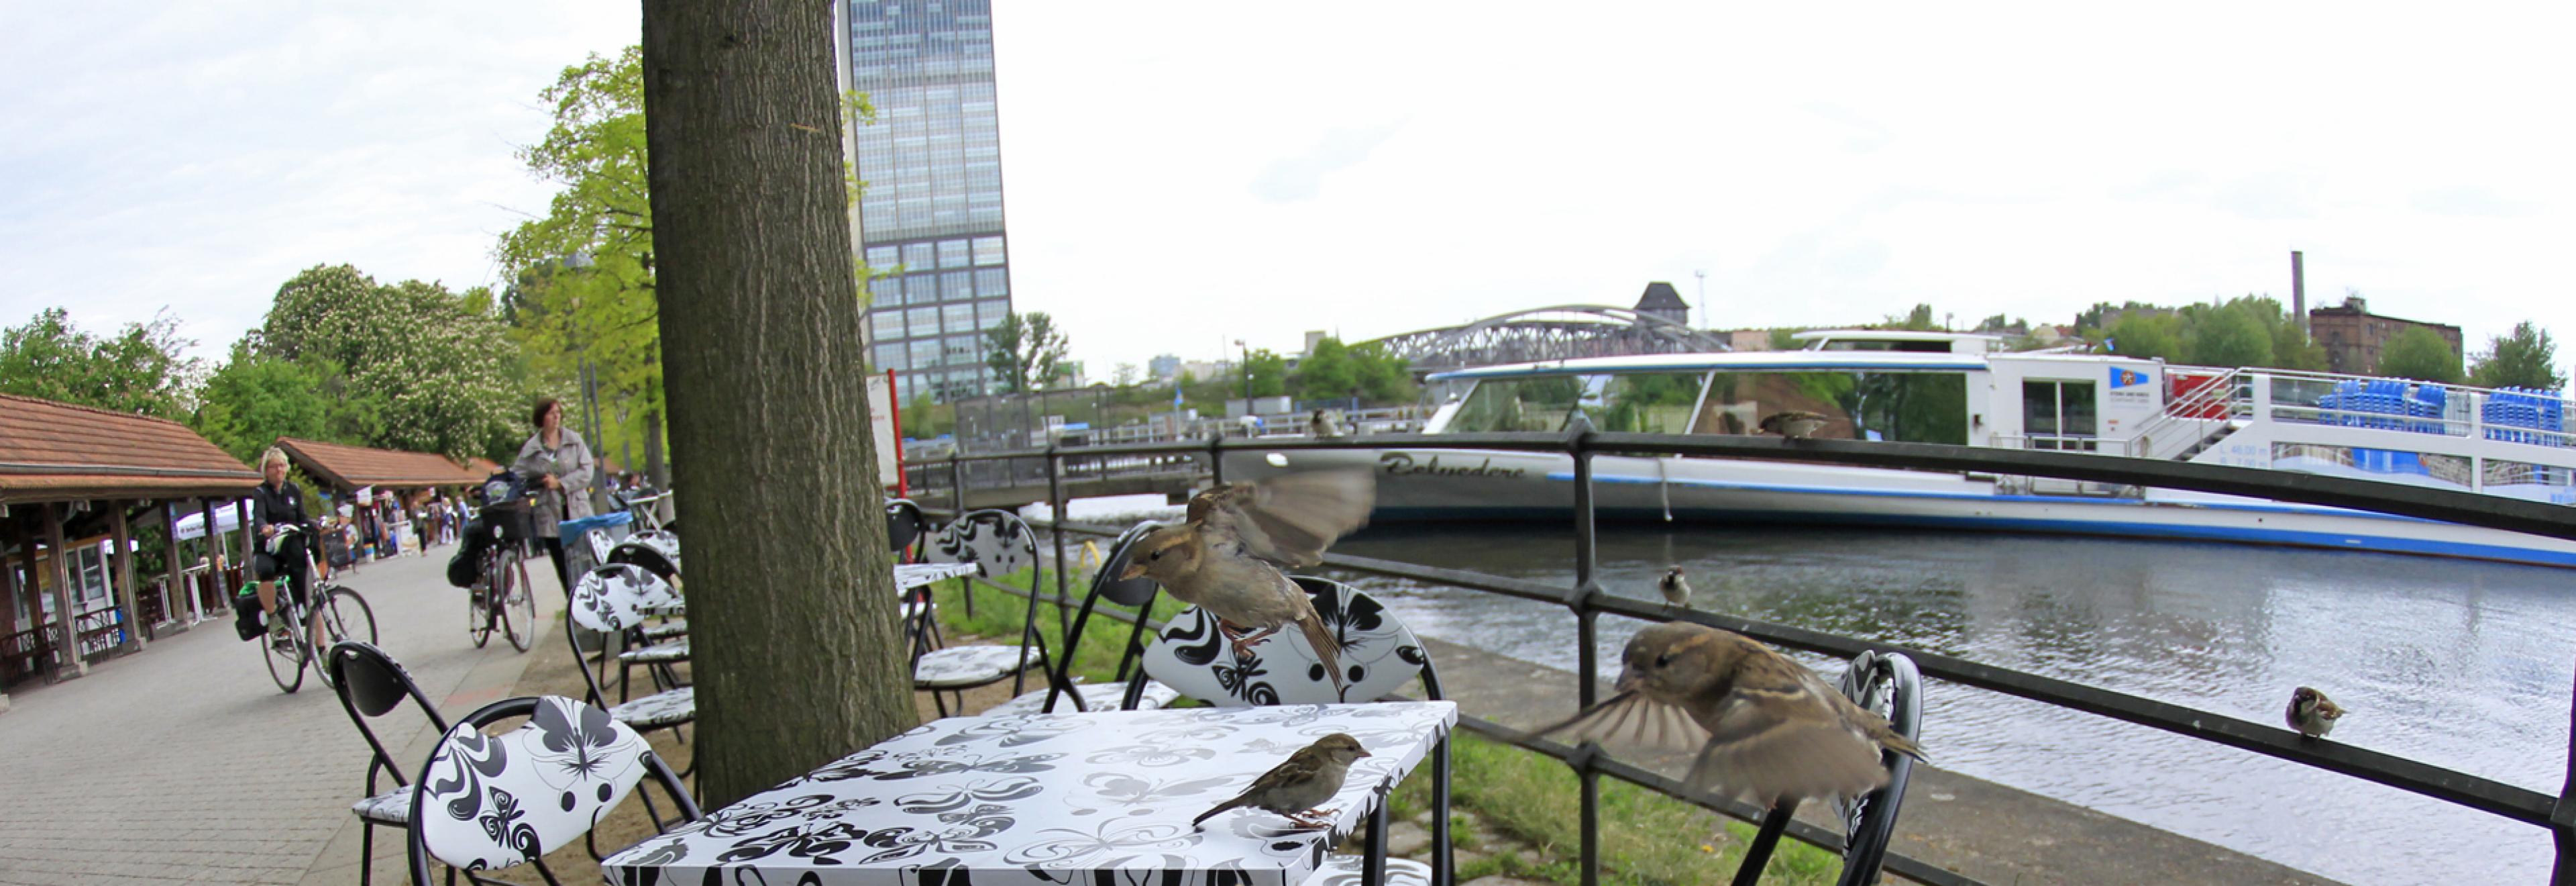 Mehrere kleine Vögel sitzen af Stühlen und an einem gedeckten Restauranttisch, an dem keine Menschen sitzen. Im Hintergrund sieht man einen Fluss und einen Weg mit einigen Personen.